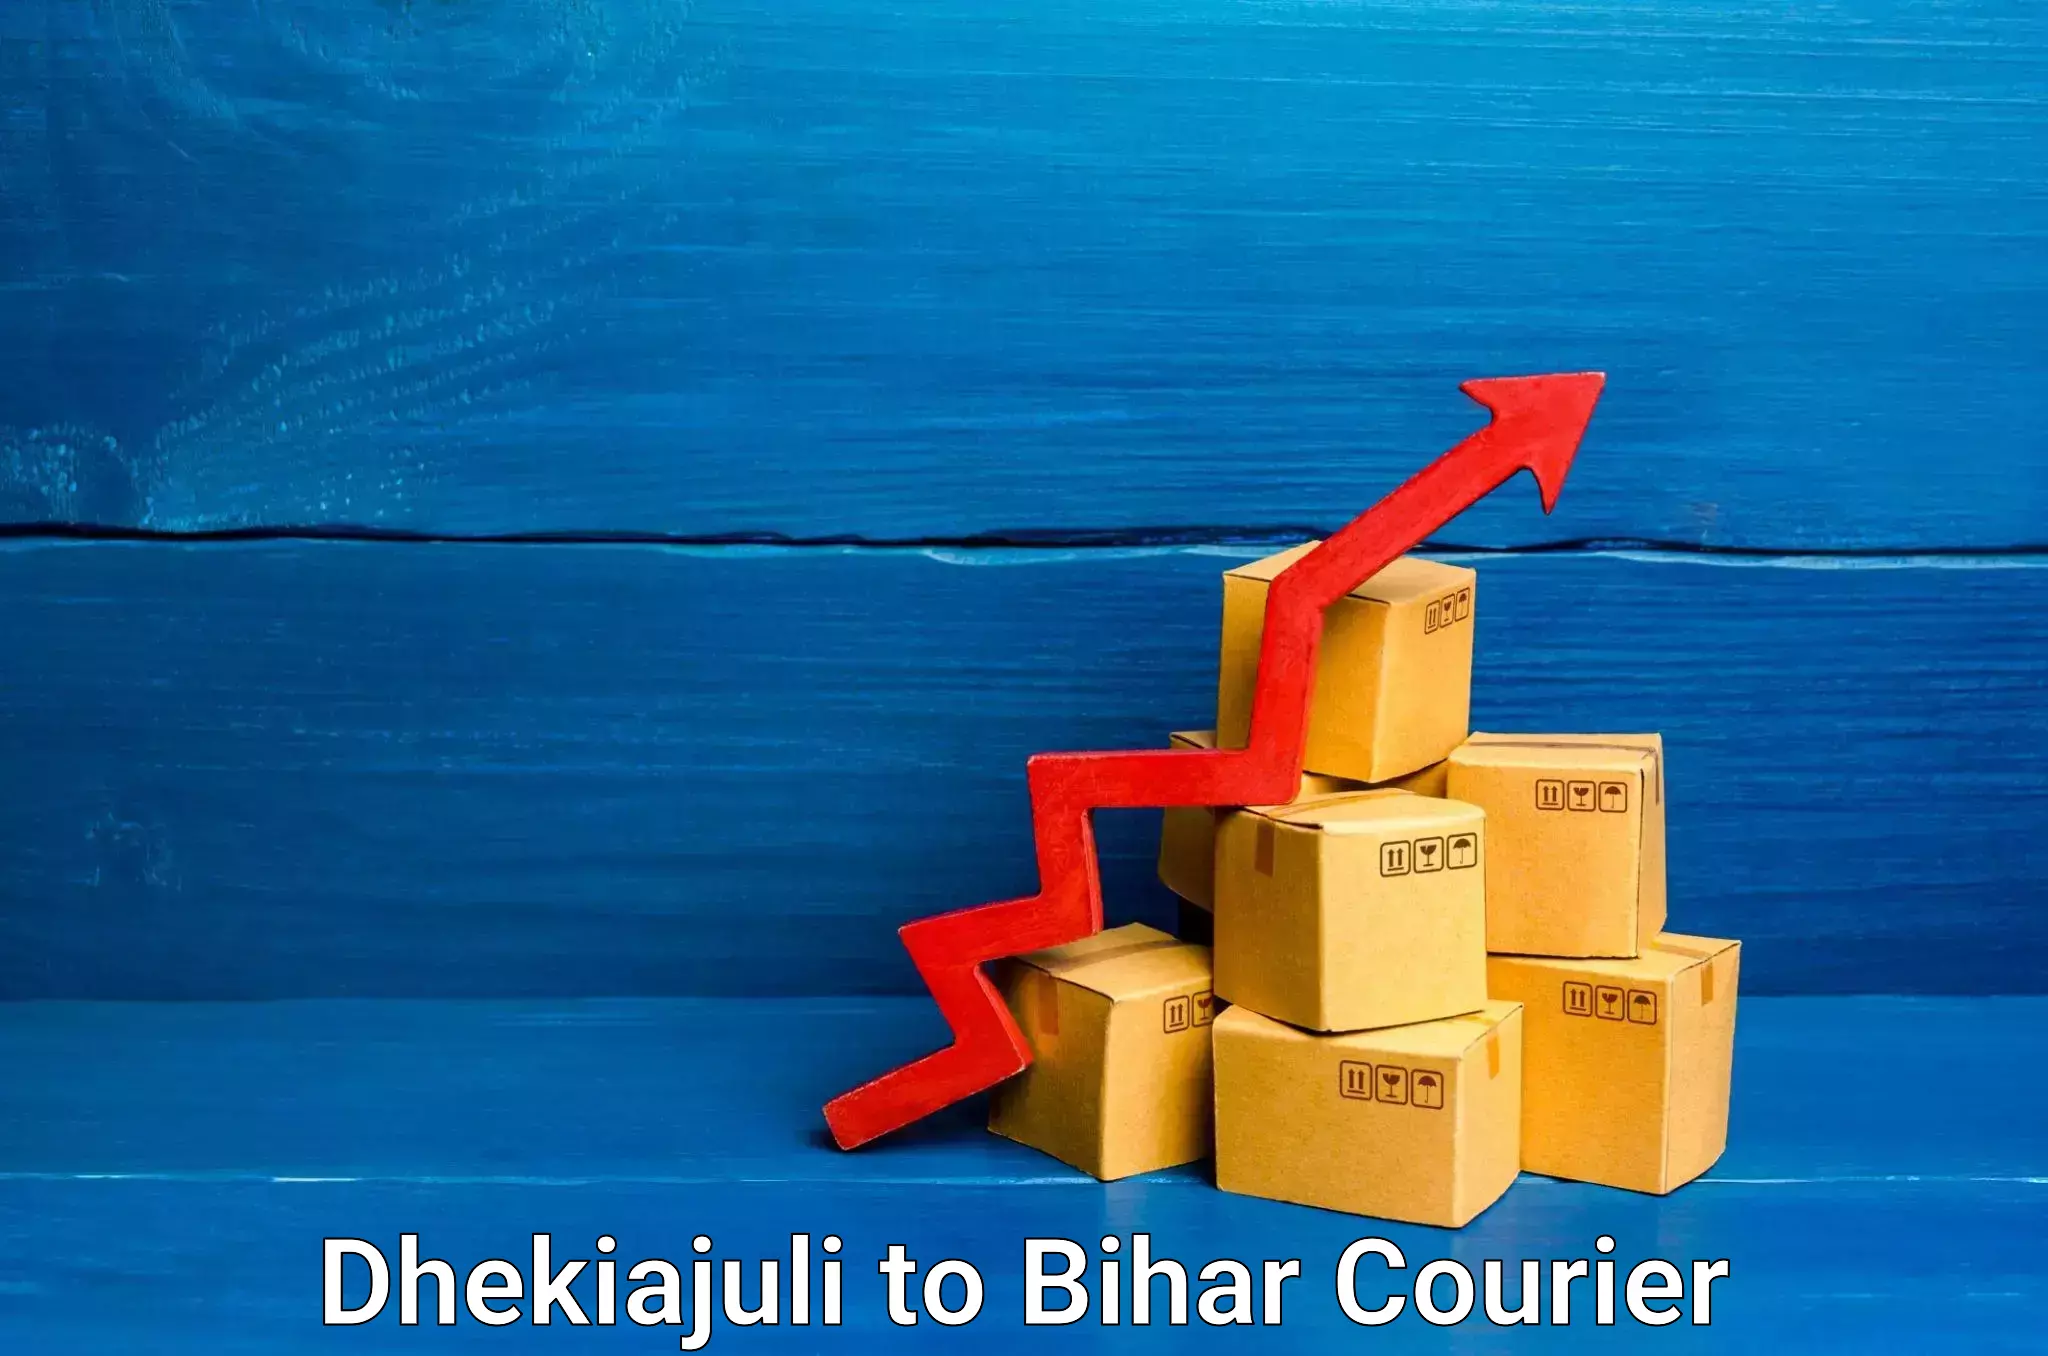 Tech-enabled shipping Dhekiajuli to Khagaria